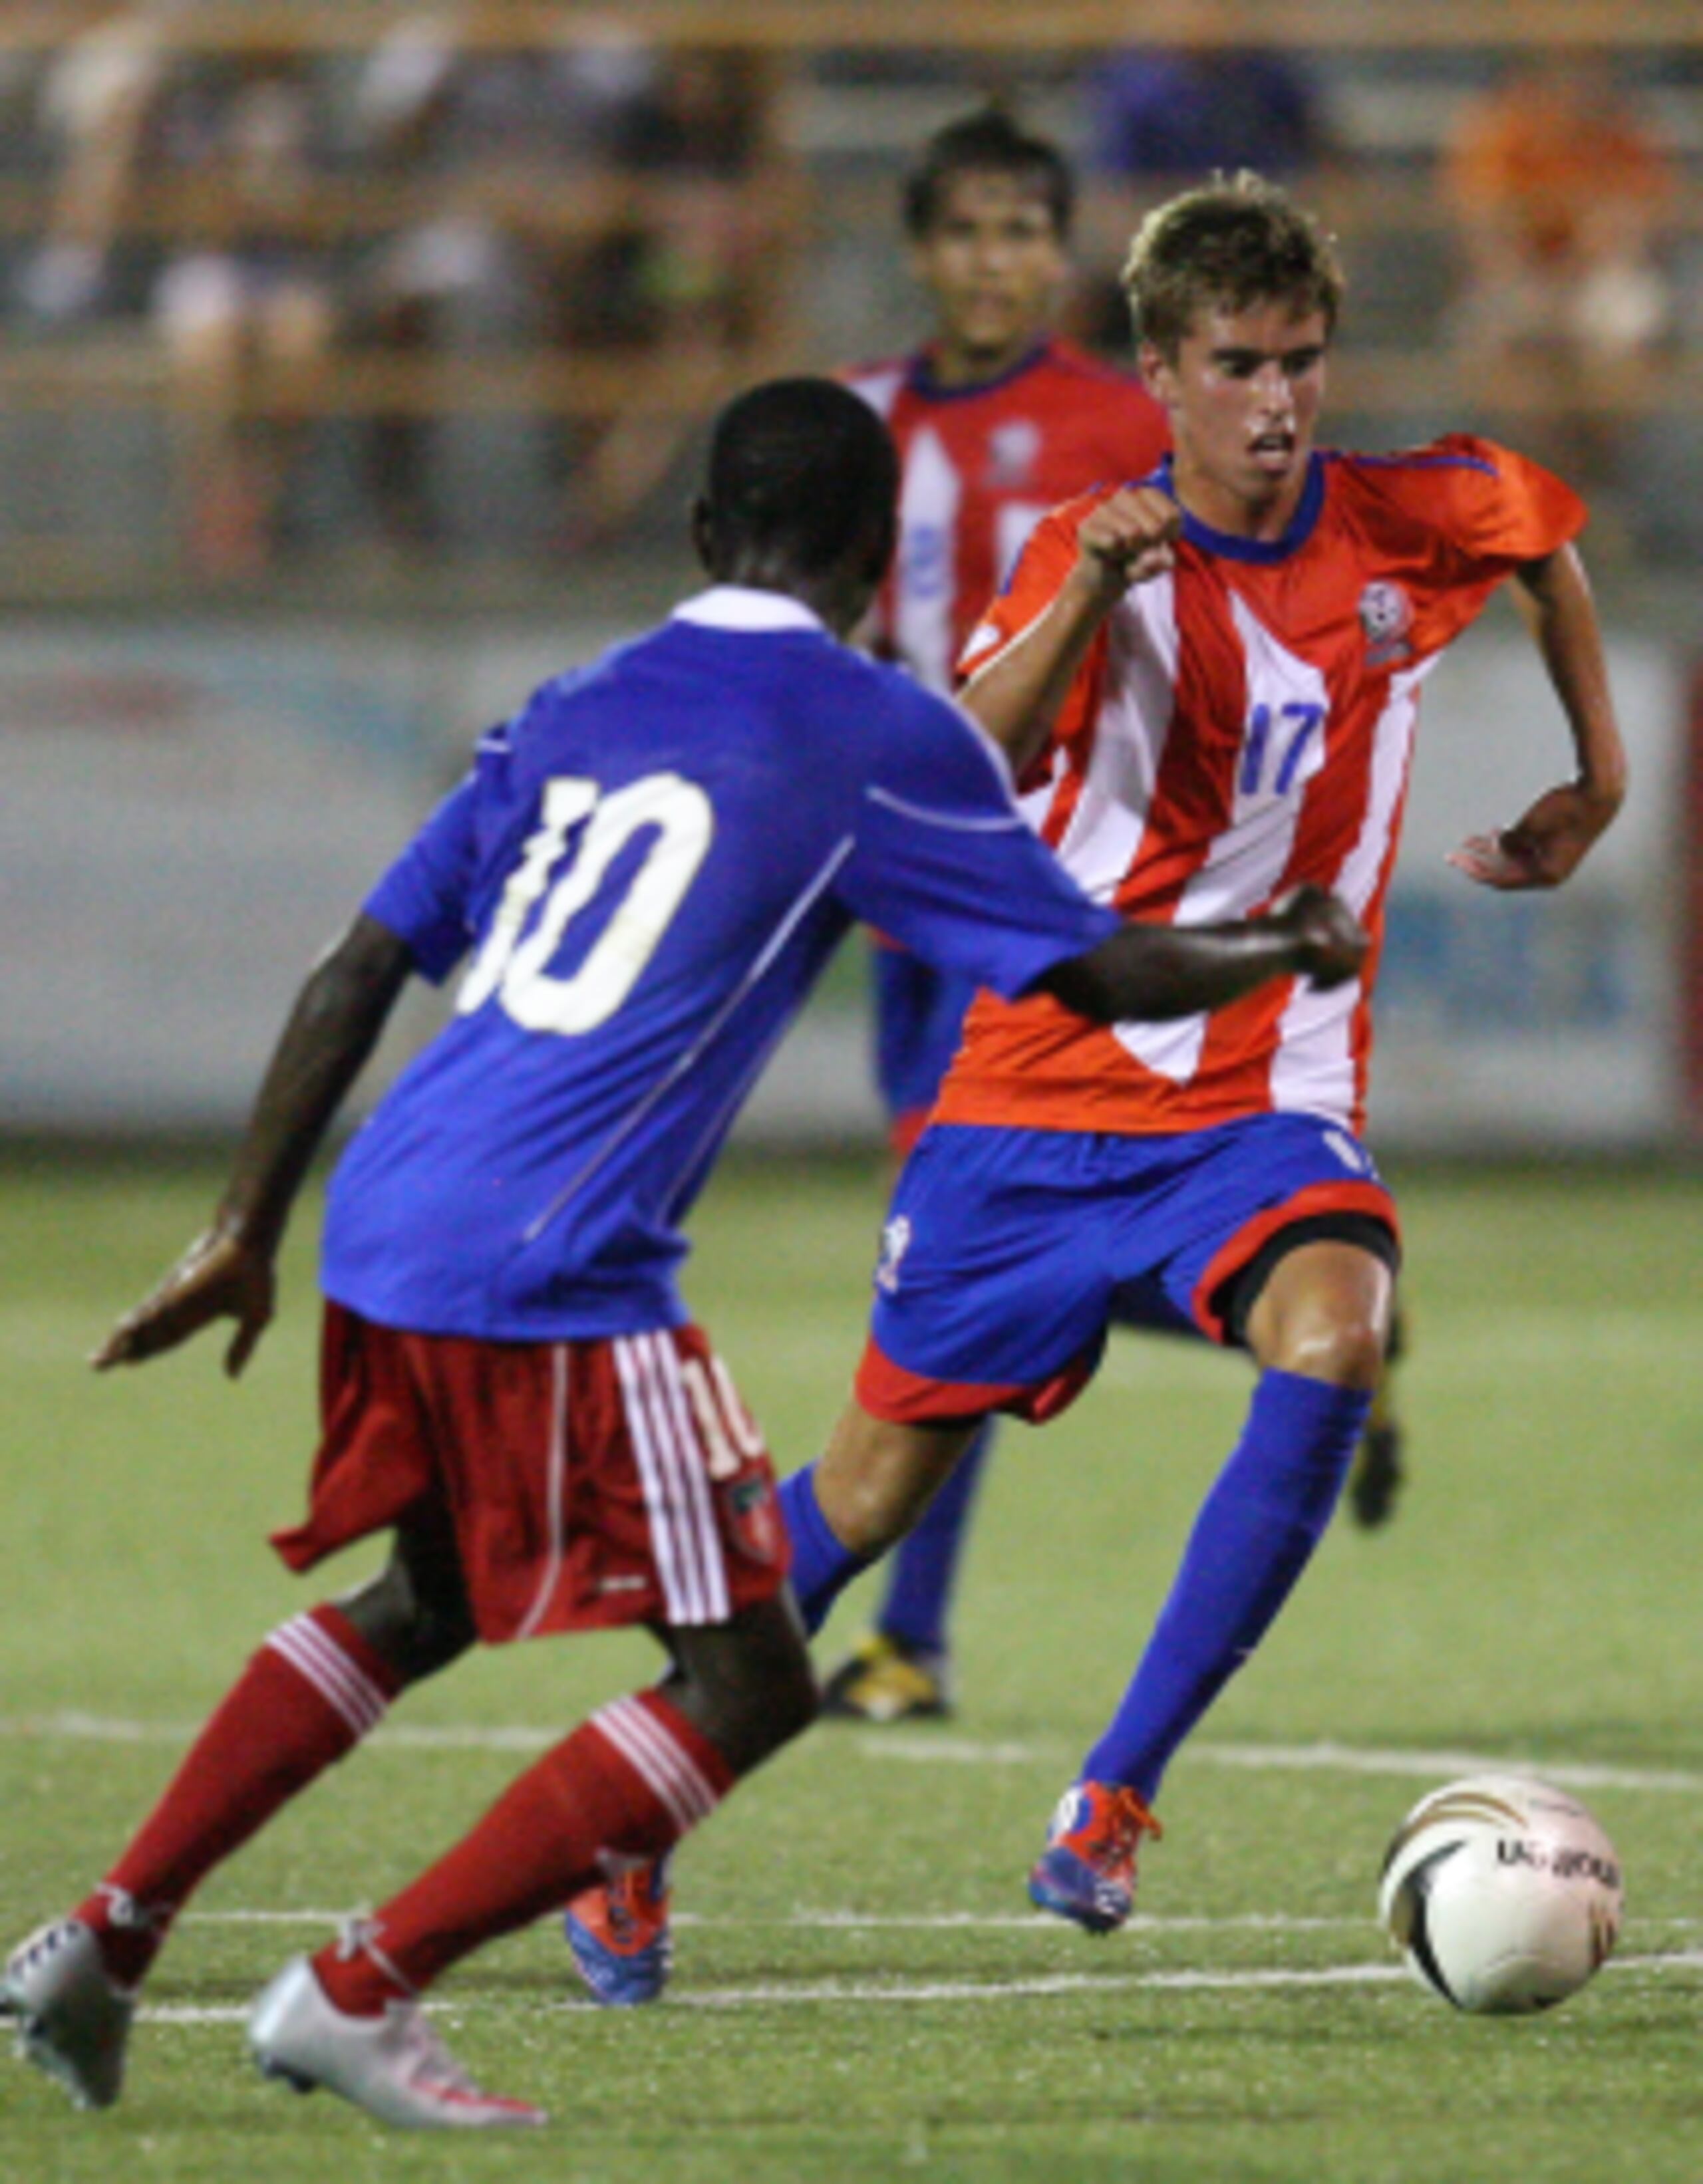 La Selección Nacional Sub-20 empató con Haití, 0-0, en su último compromiso. En la foto, Alex Oikkonen. (jose.candelaria@gfrmedia.com)